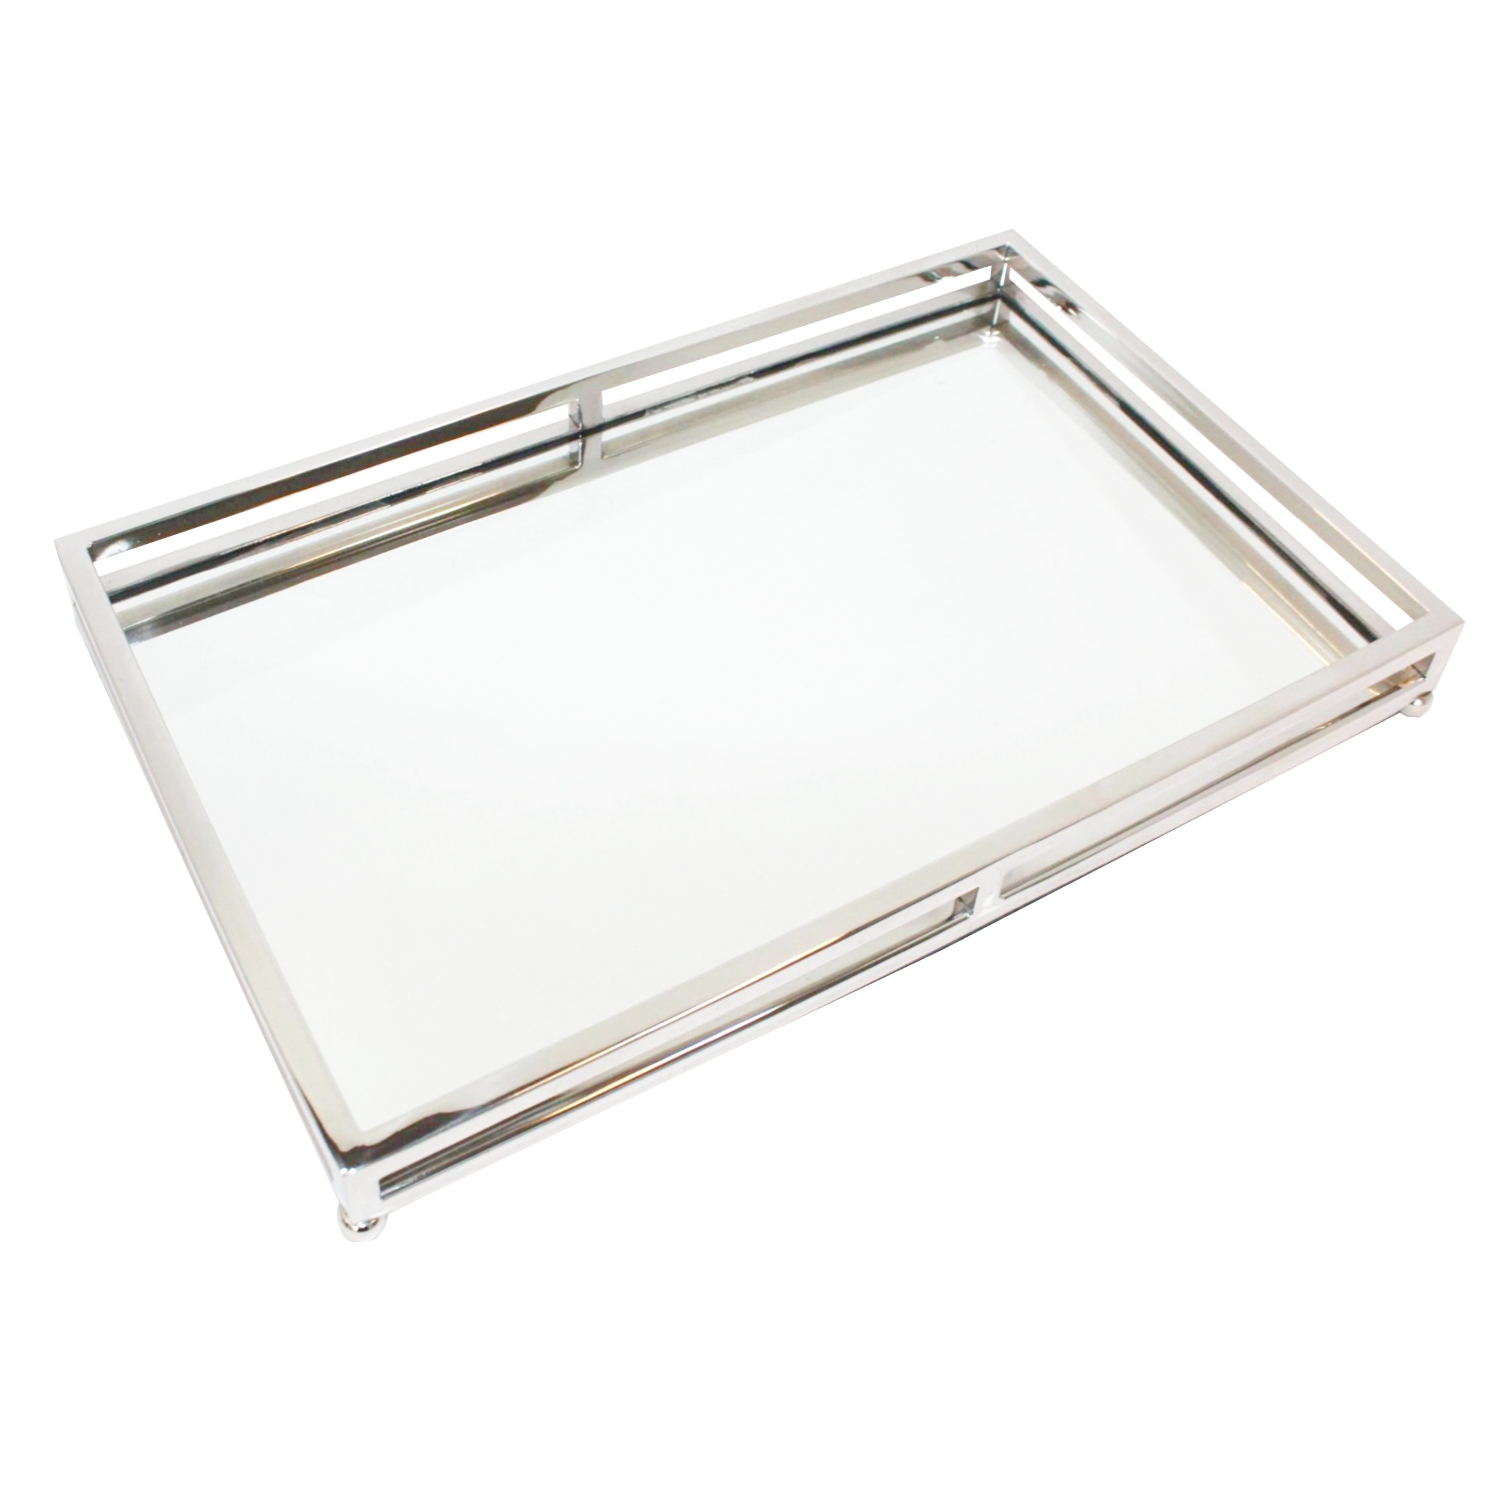 Edles Tablett Edelstahl silber Spiegel Glas länglich 41 cm – Flourou Luxury  Interior Design & Art